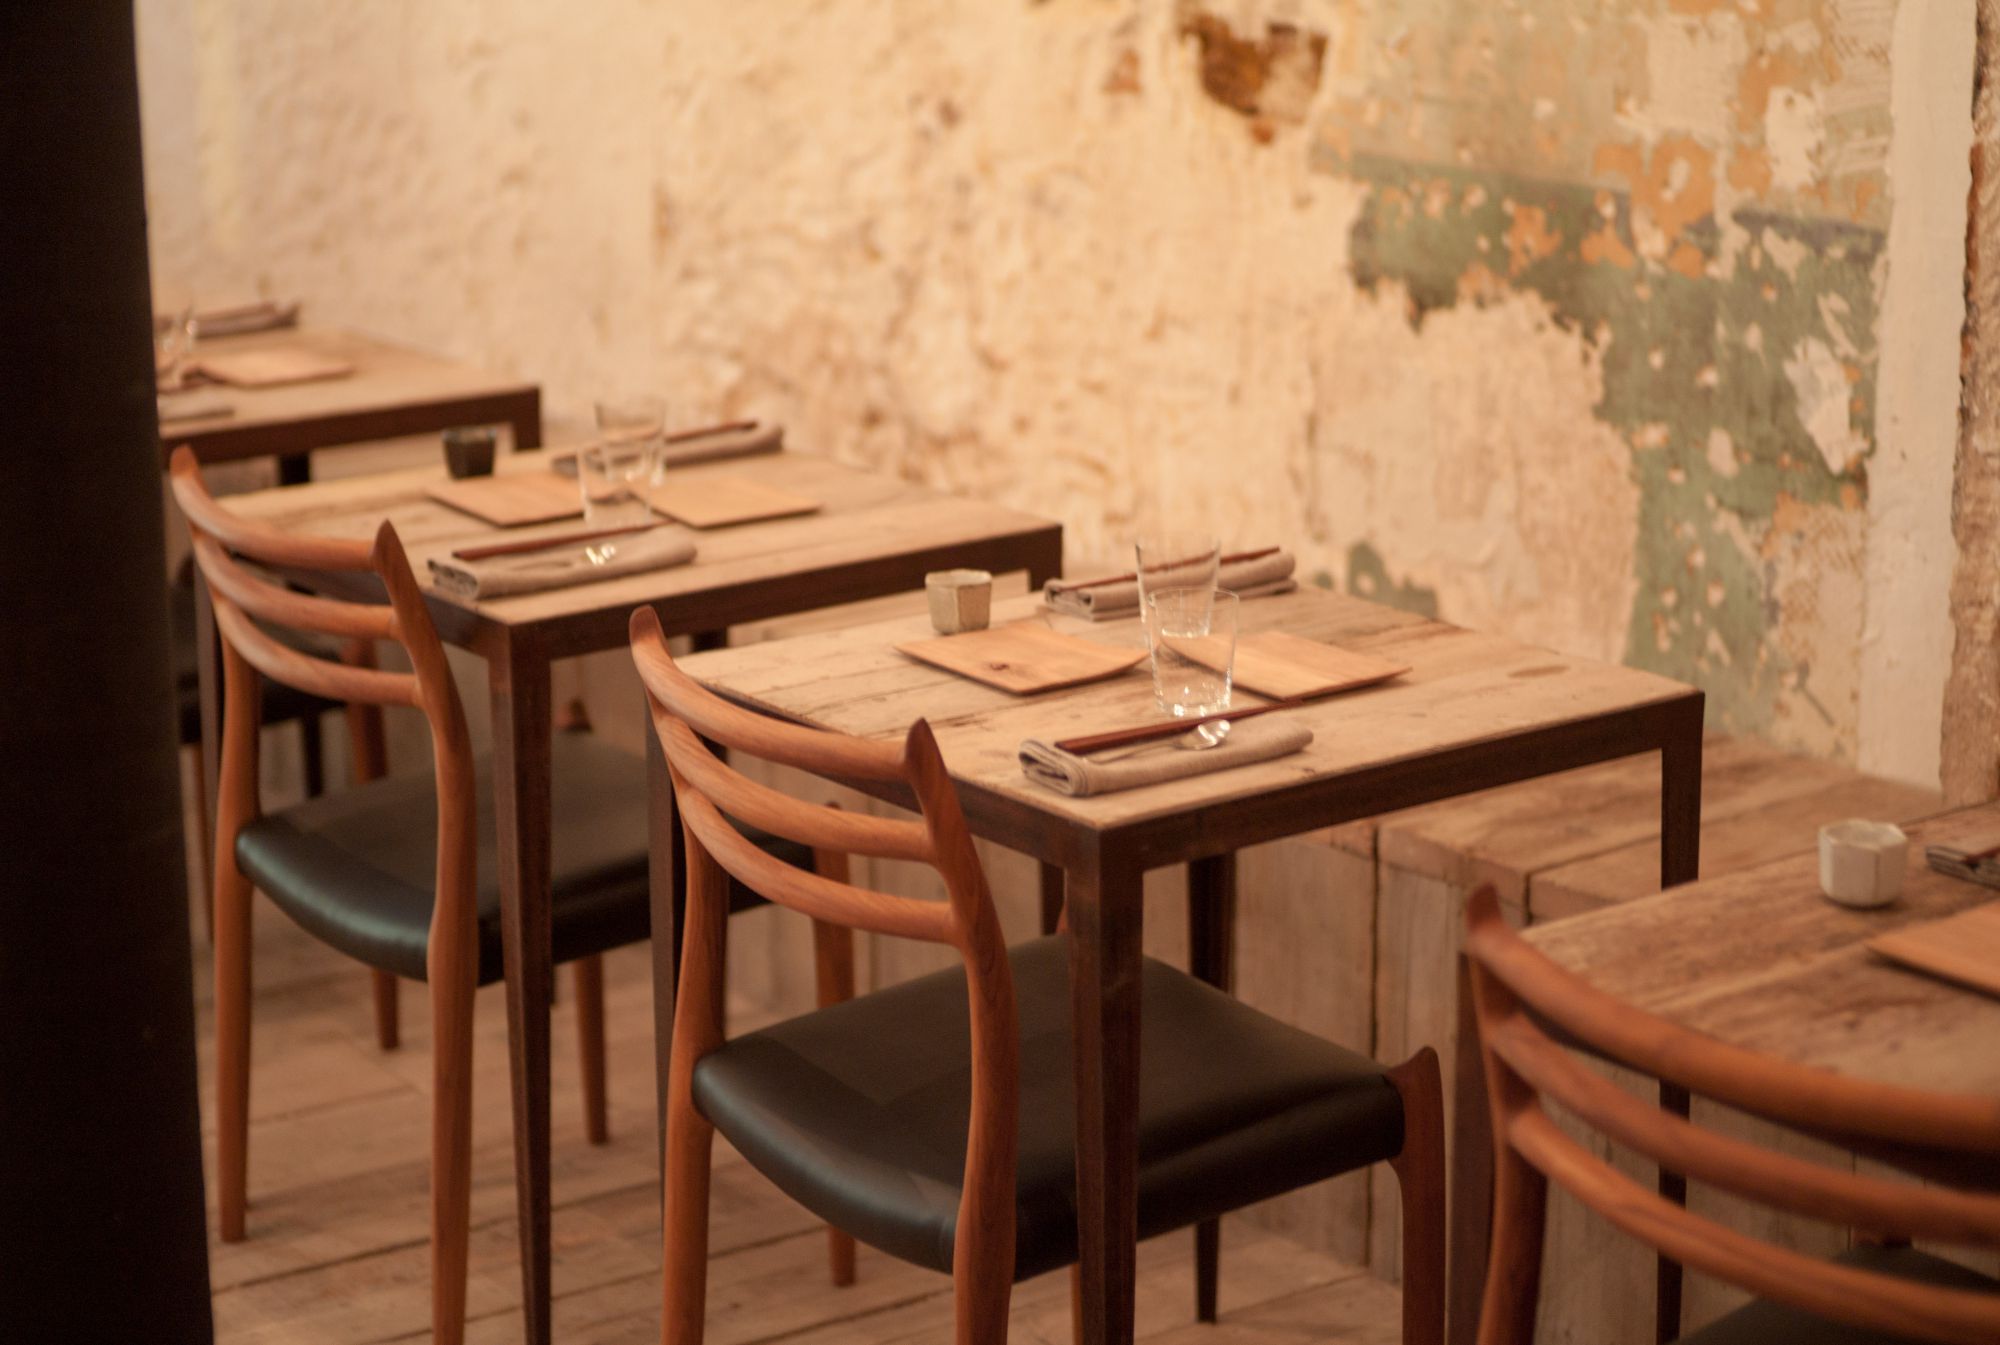 Dersou, restaurant concept - tables